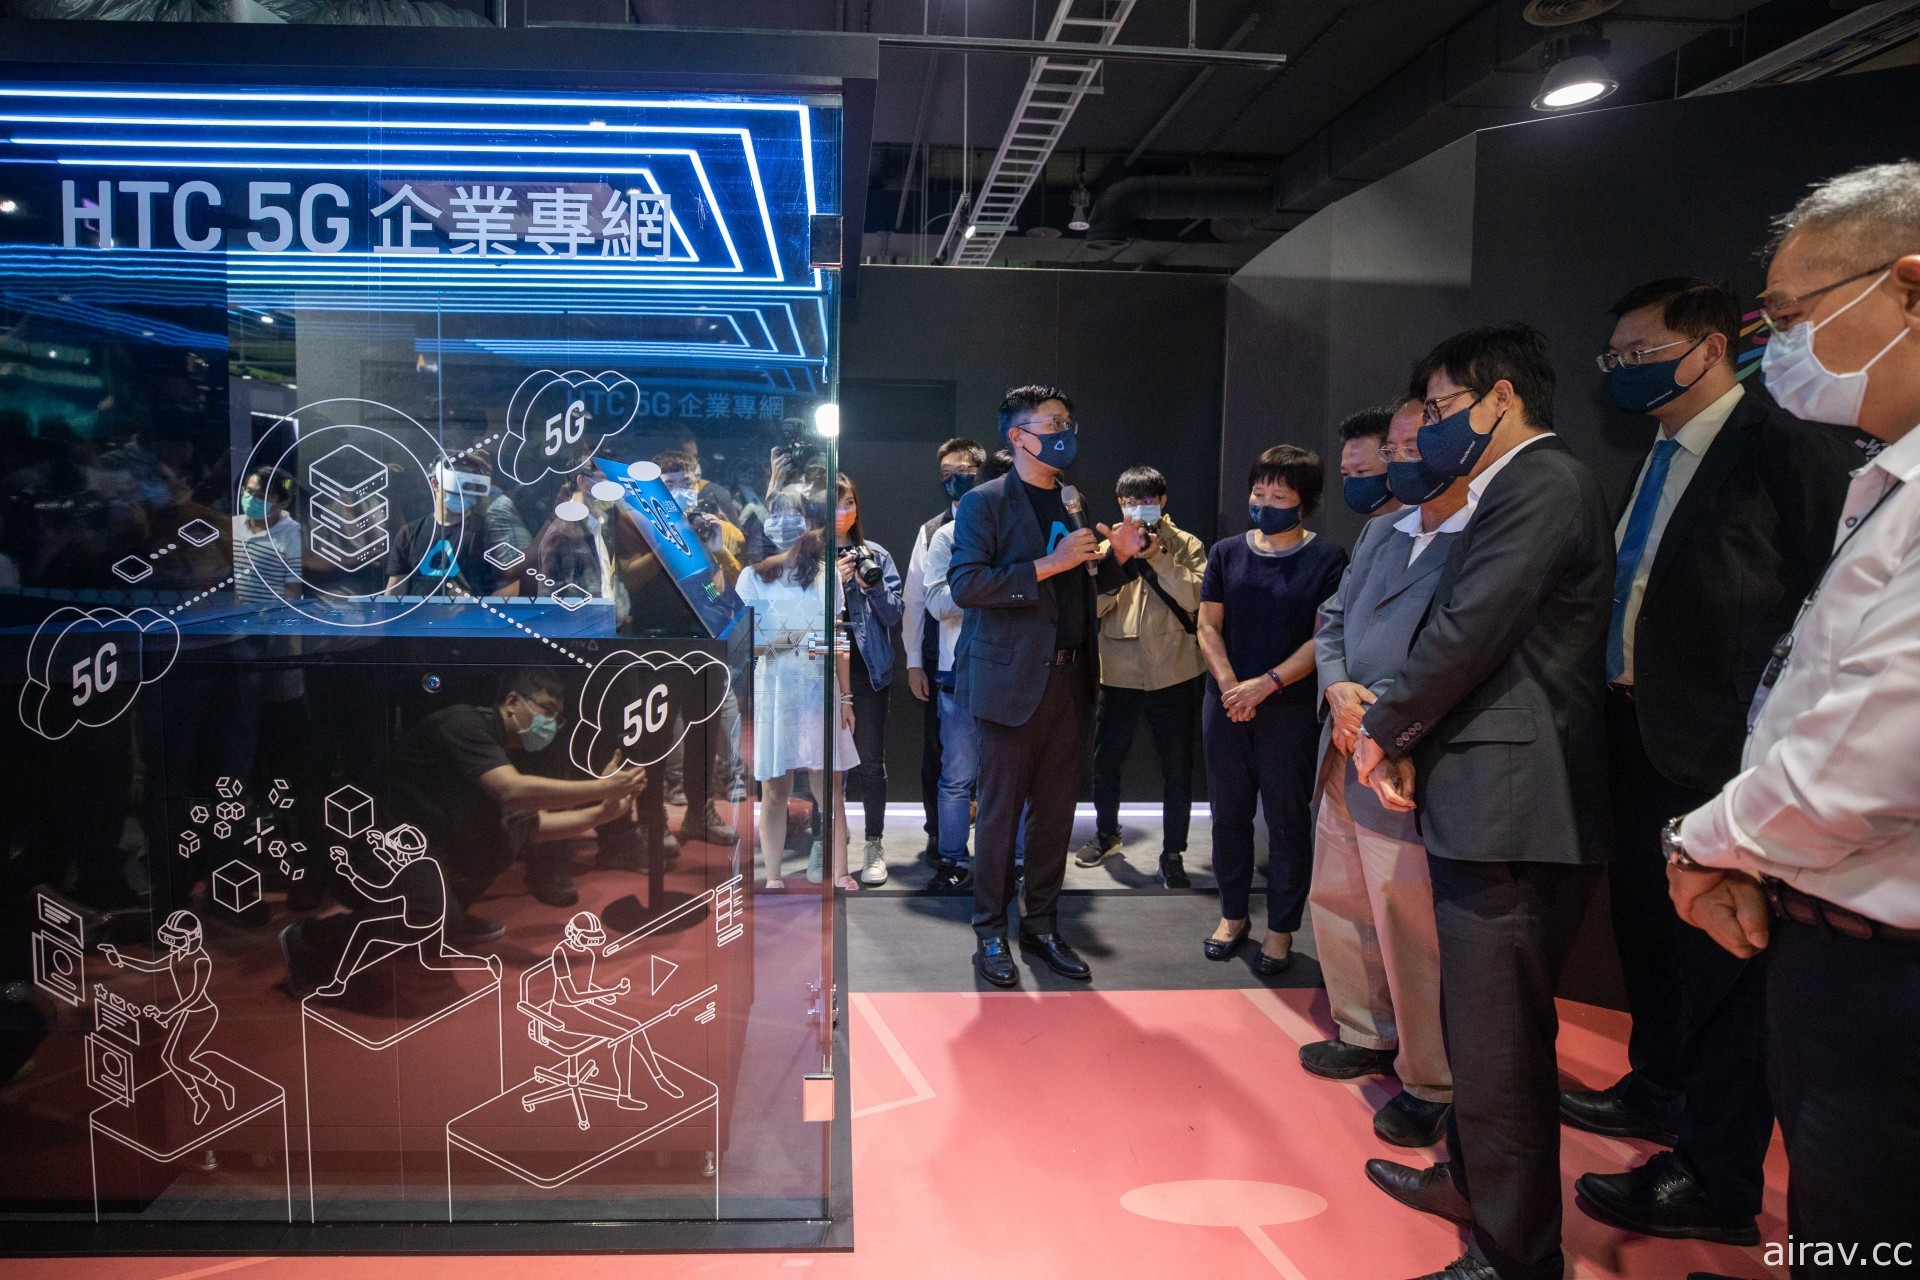 高市府與 HTC 合作打造台灣首座開放民眾體驗 5G 獨立組網專網與邊緣雲 VR 場域